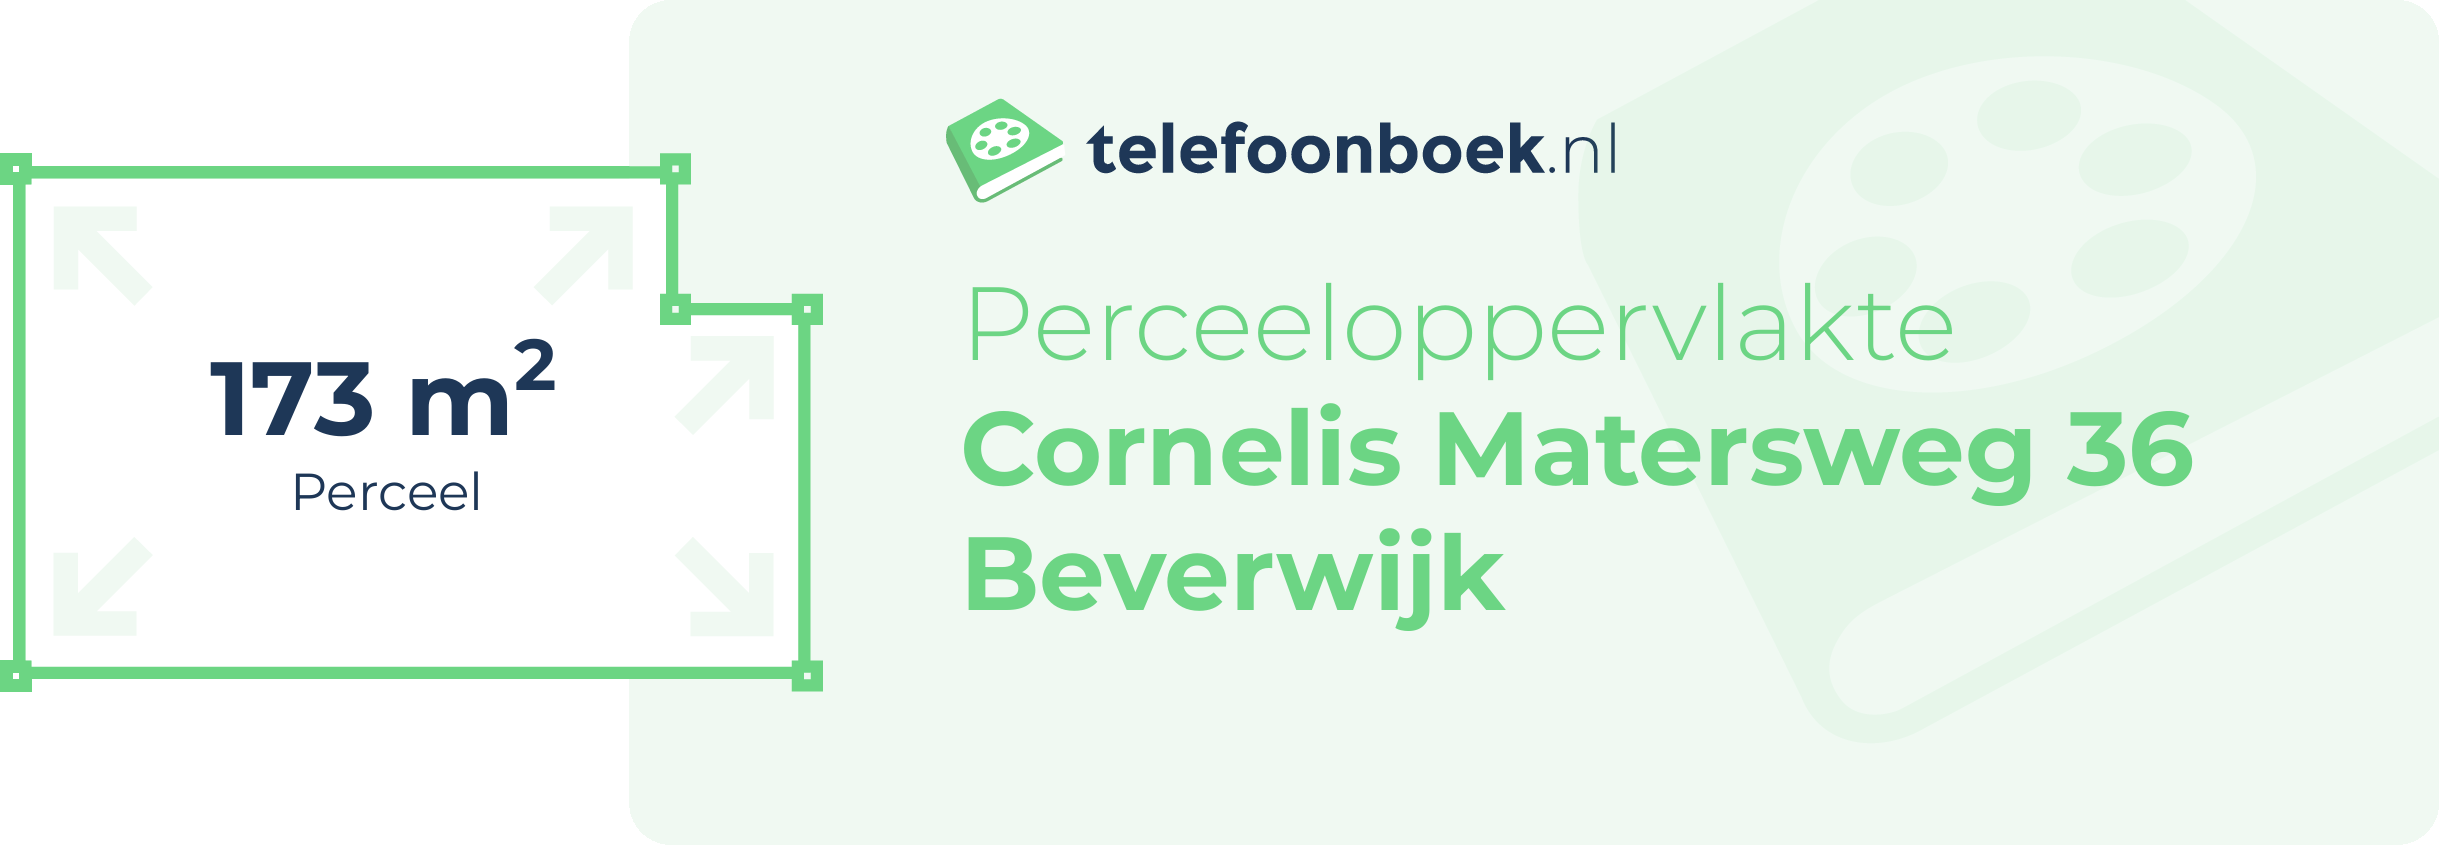 Perceeloppervlakte Cornelis Matersweg 36 Beverwijk